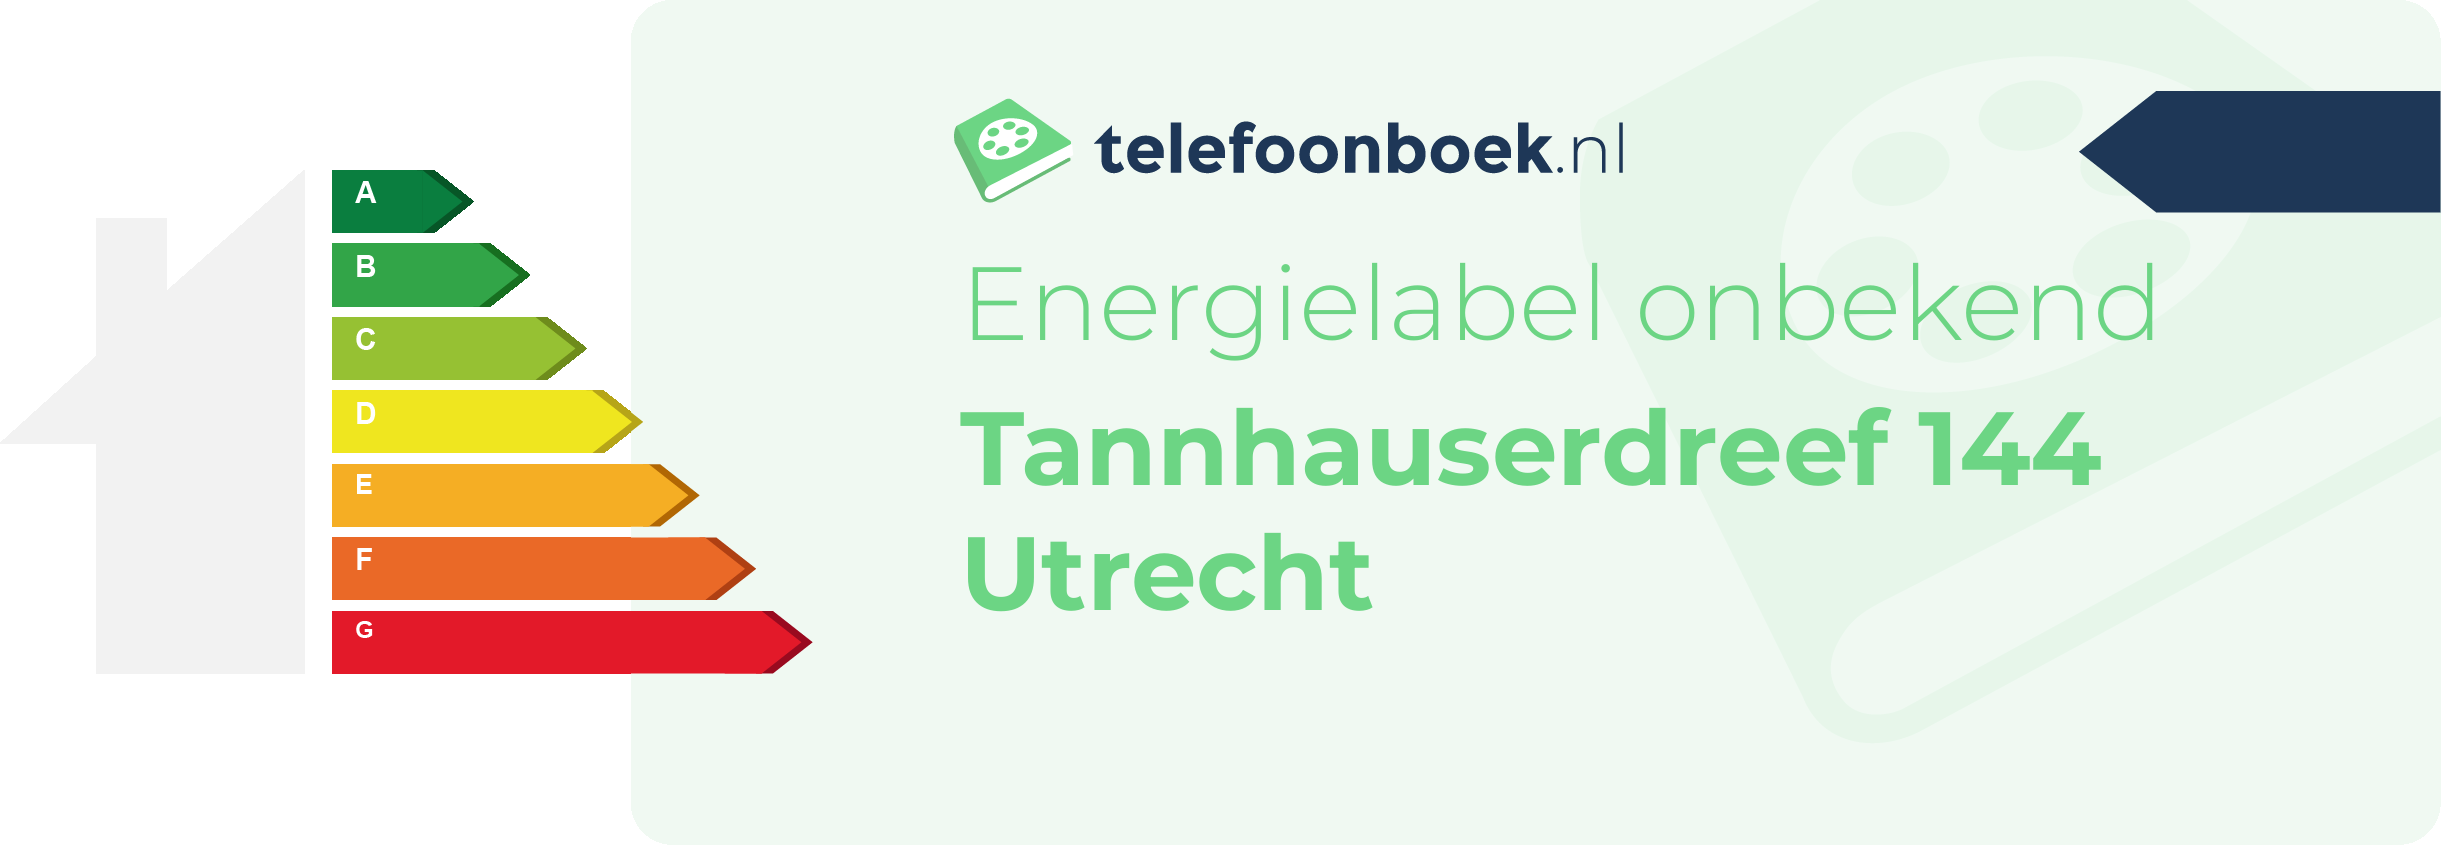 Energielabel Tannhauserdreef 144 Utrecht